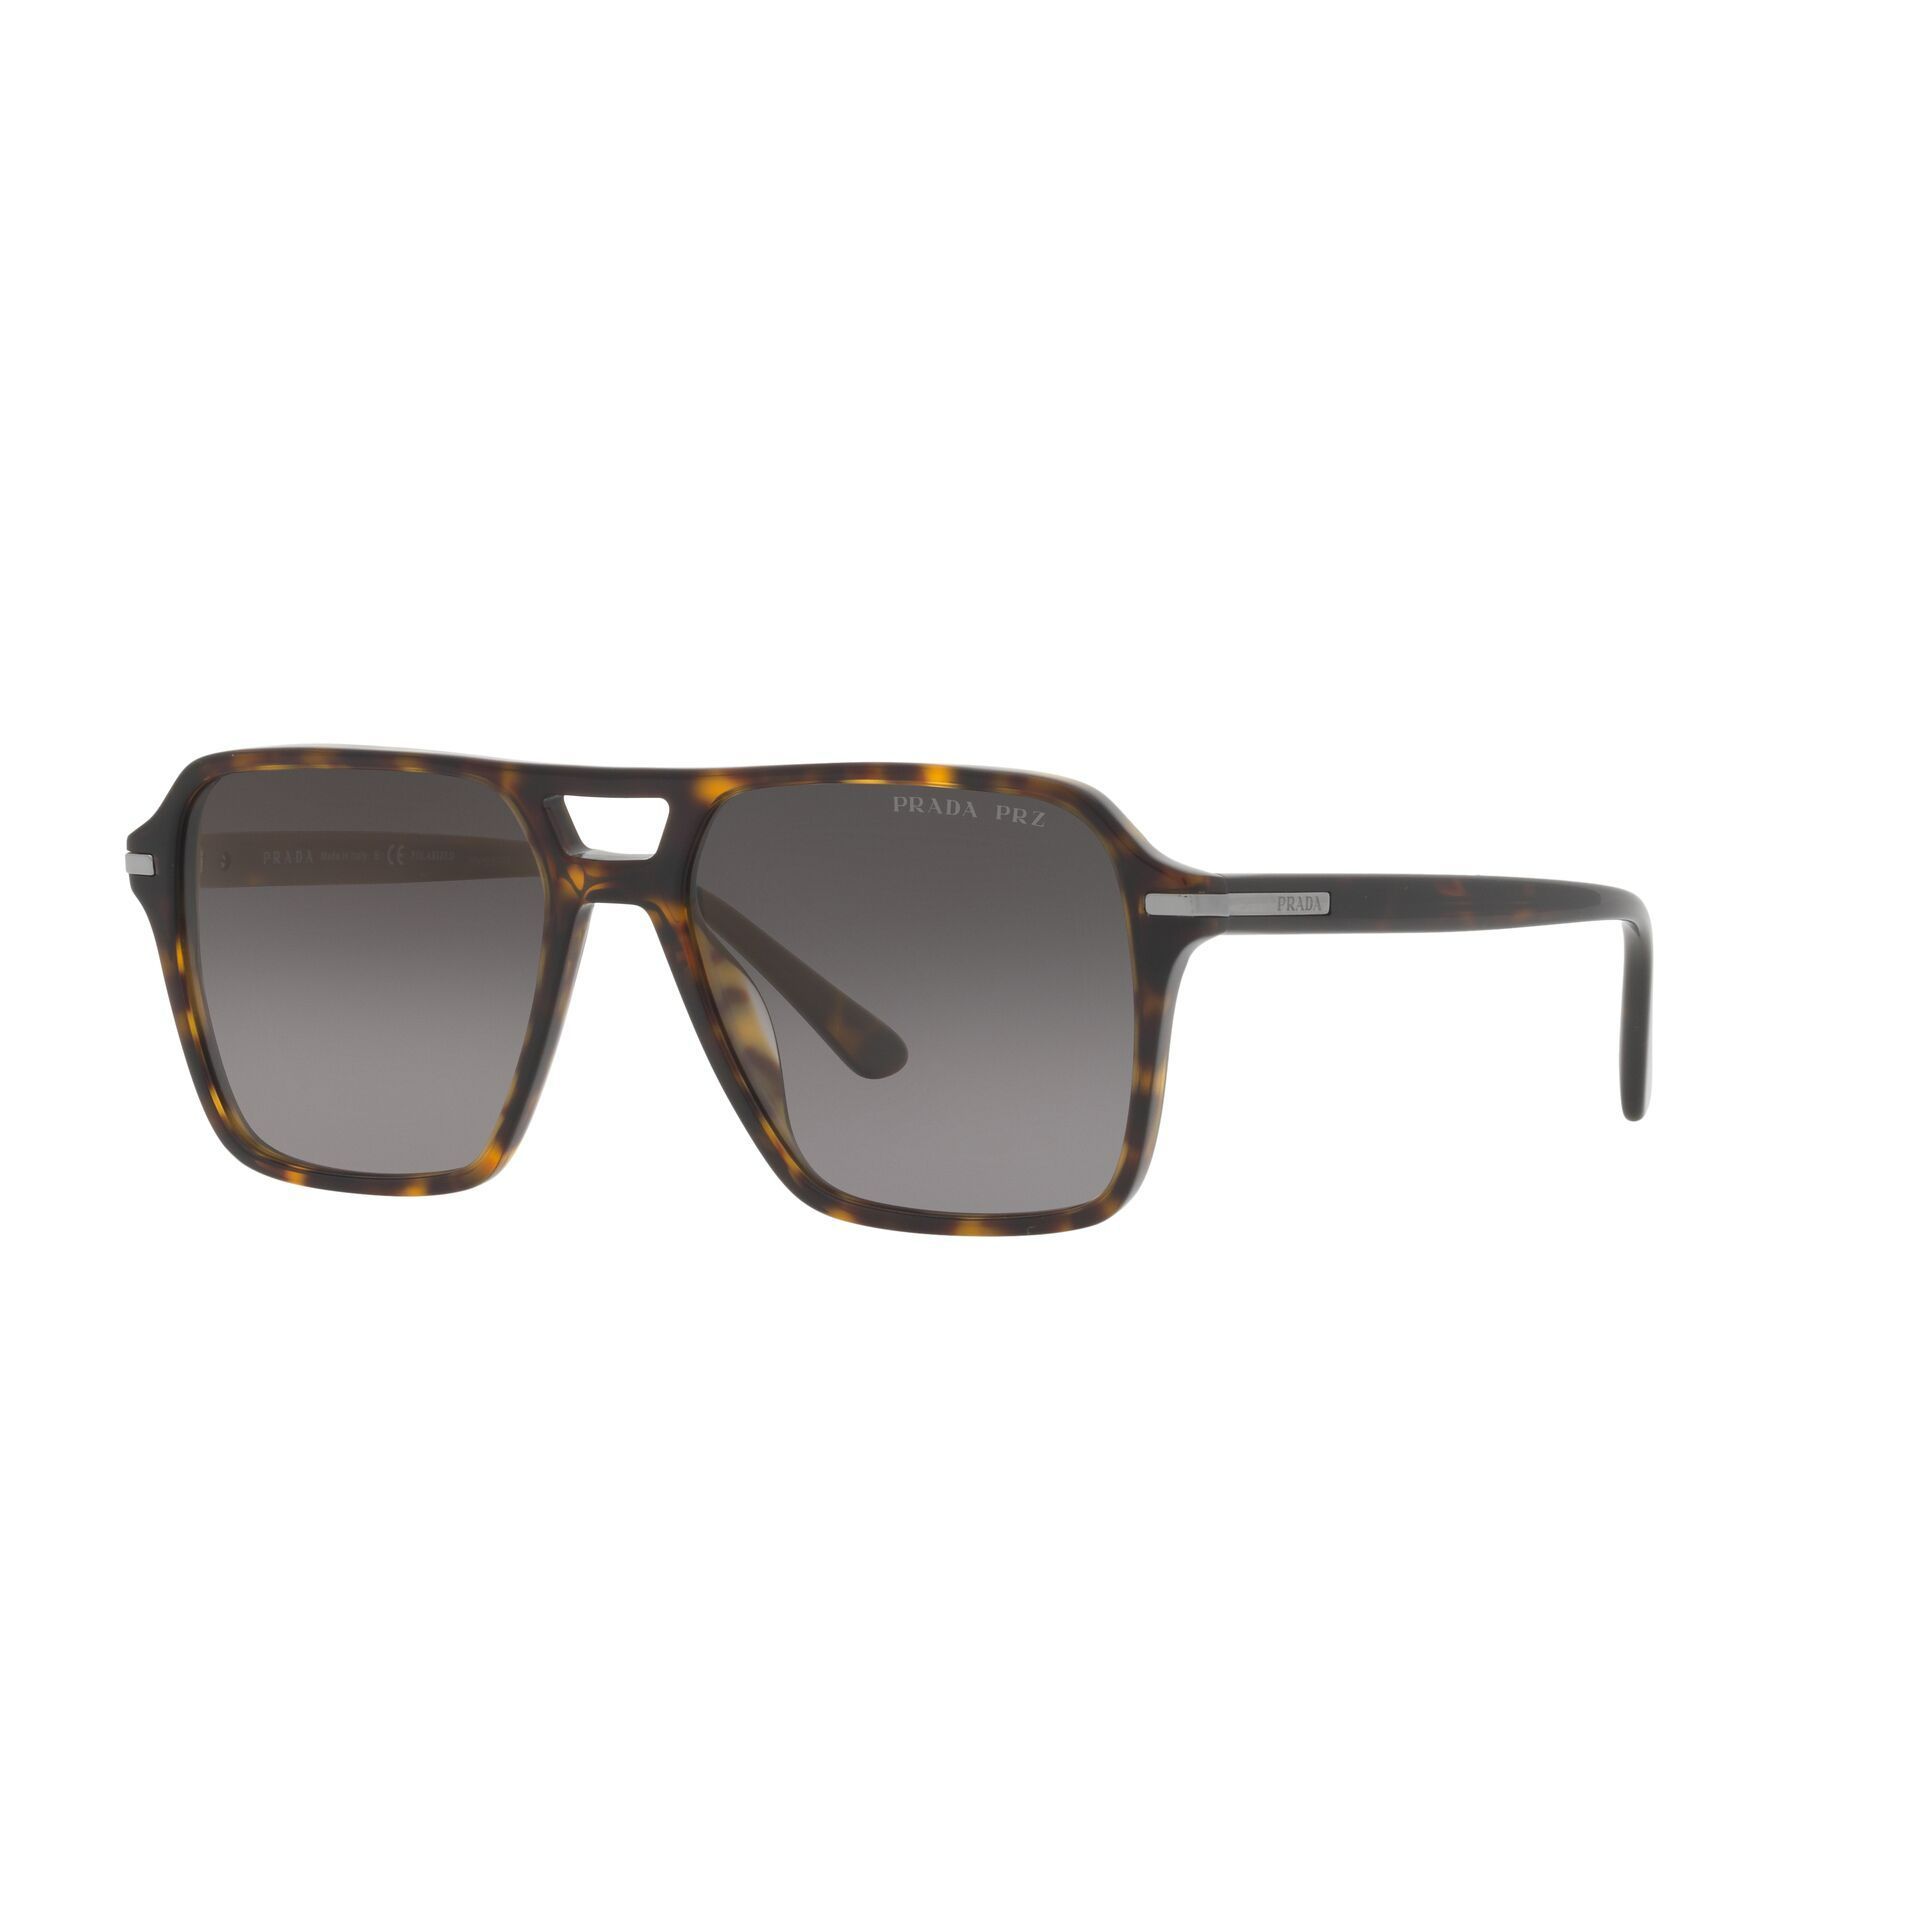 PR 20YS Square Sunglasses 2AU09G - size 55